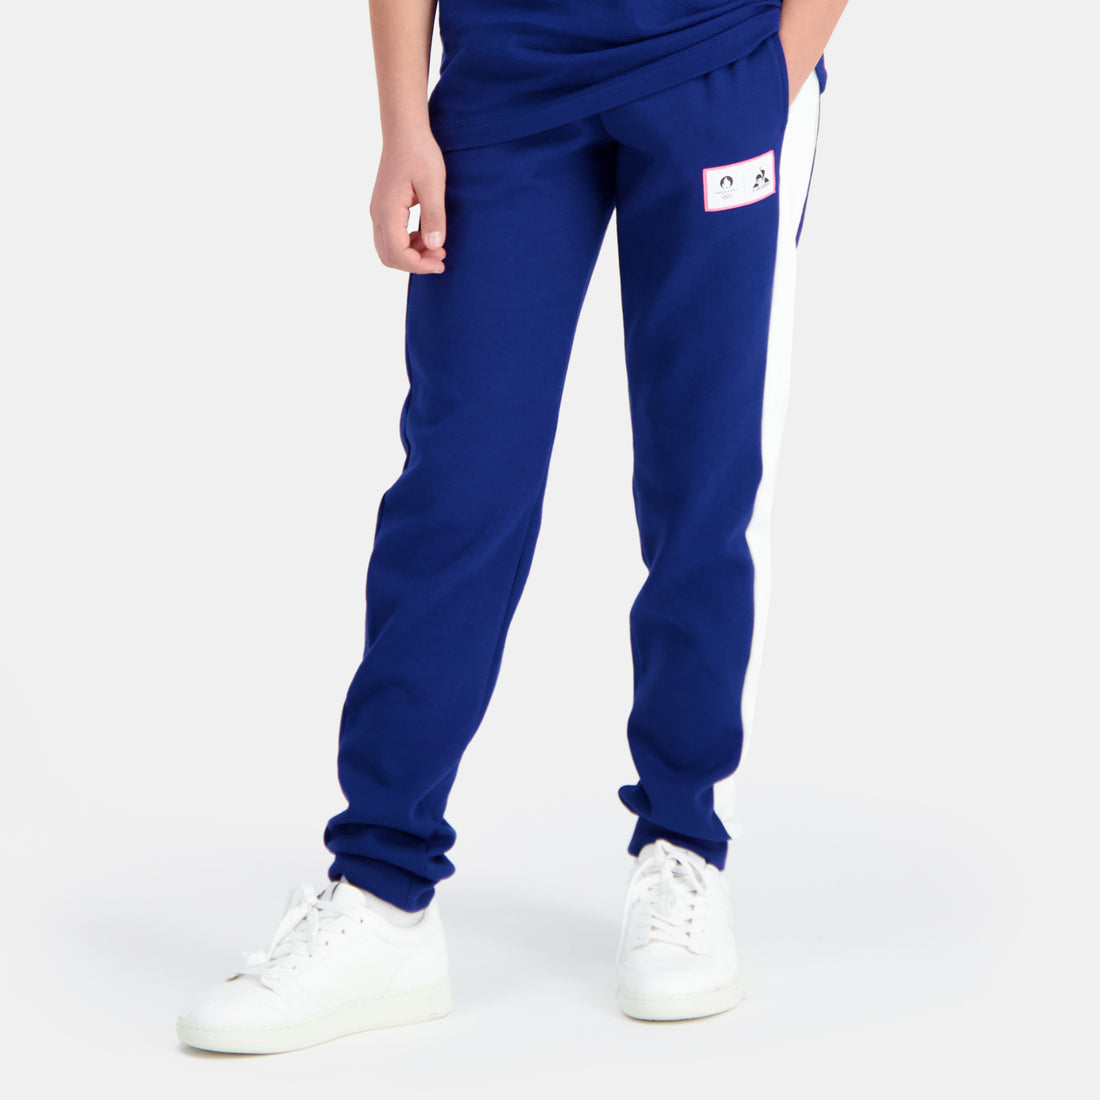 2410305-GRAPHIC P24 Pant Regular N°1 Enfant blue  | Pantaloni Bambino